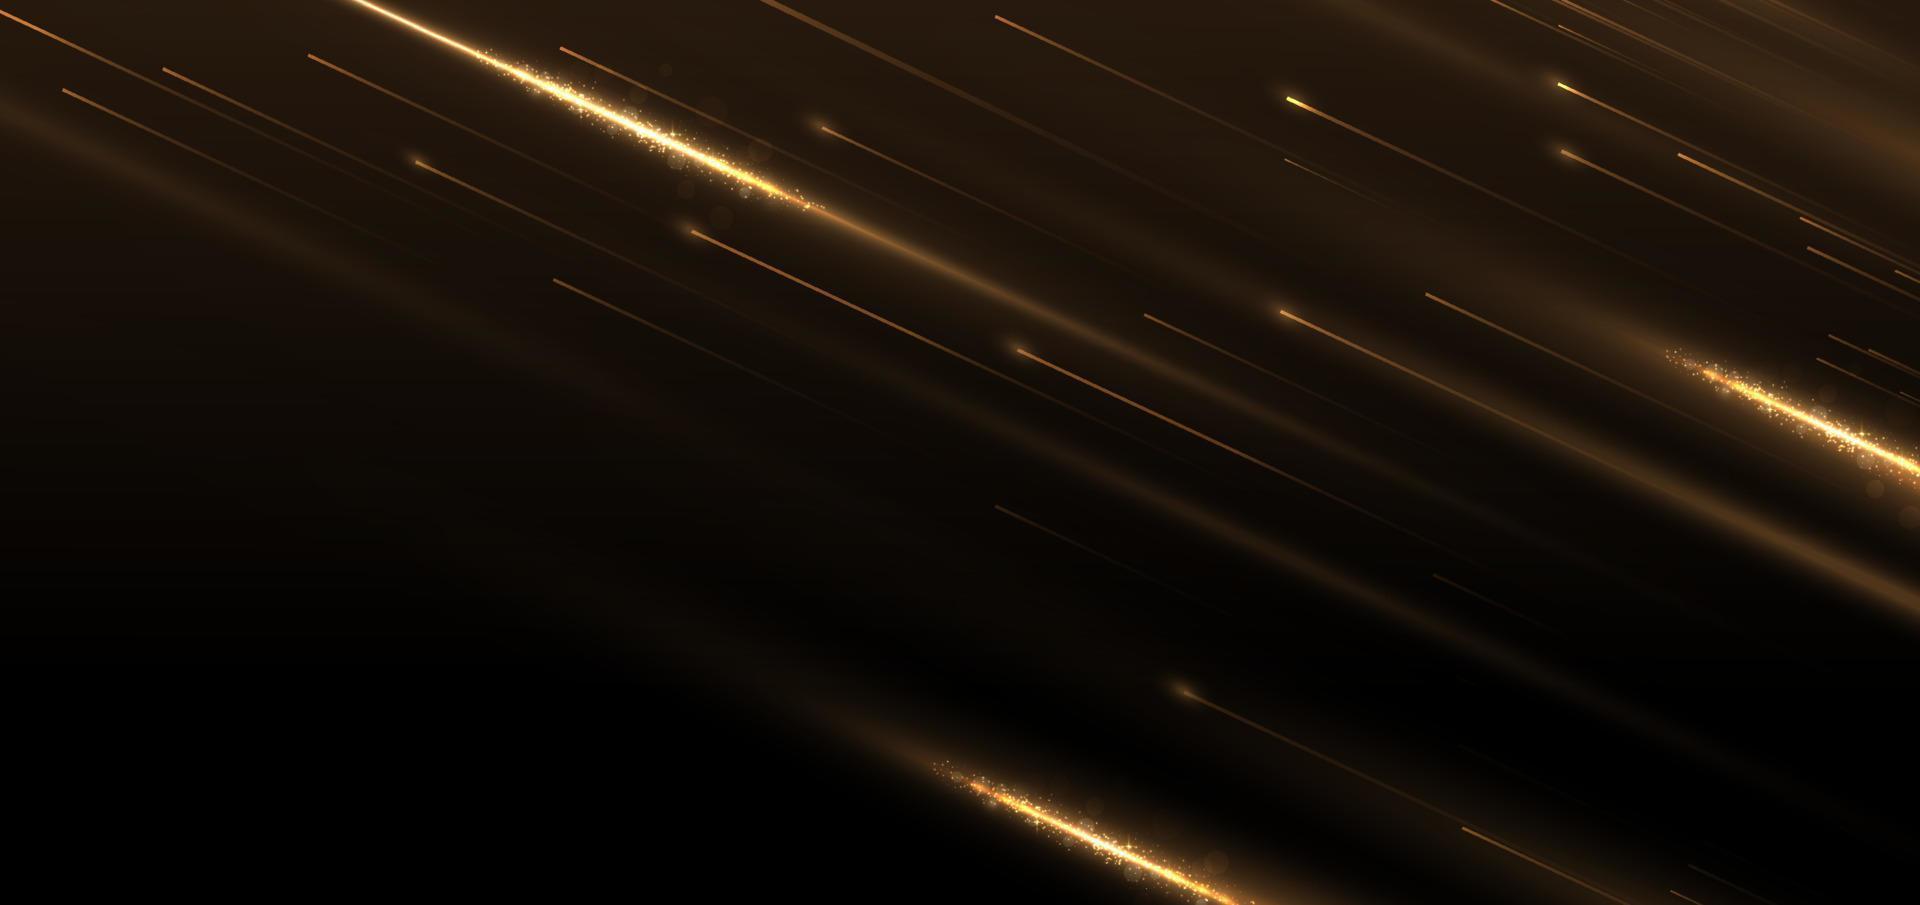 abstracte elegante gouden gloeiende lijn met lichteffect schittering op zwarte achtergrond. sjabloon premium award ontwerp. vector illustratie